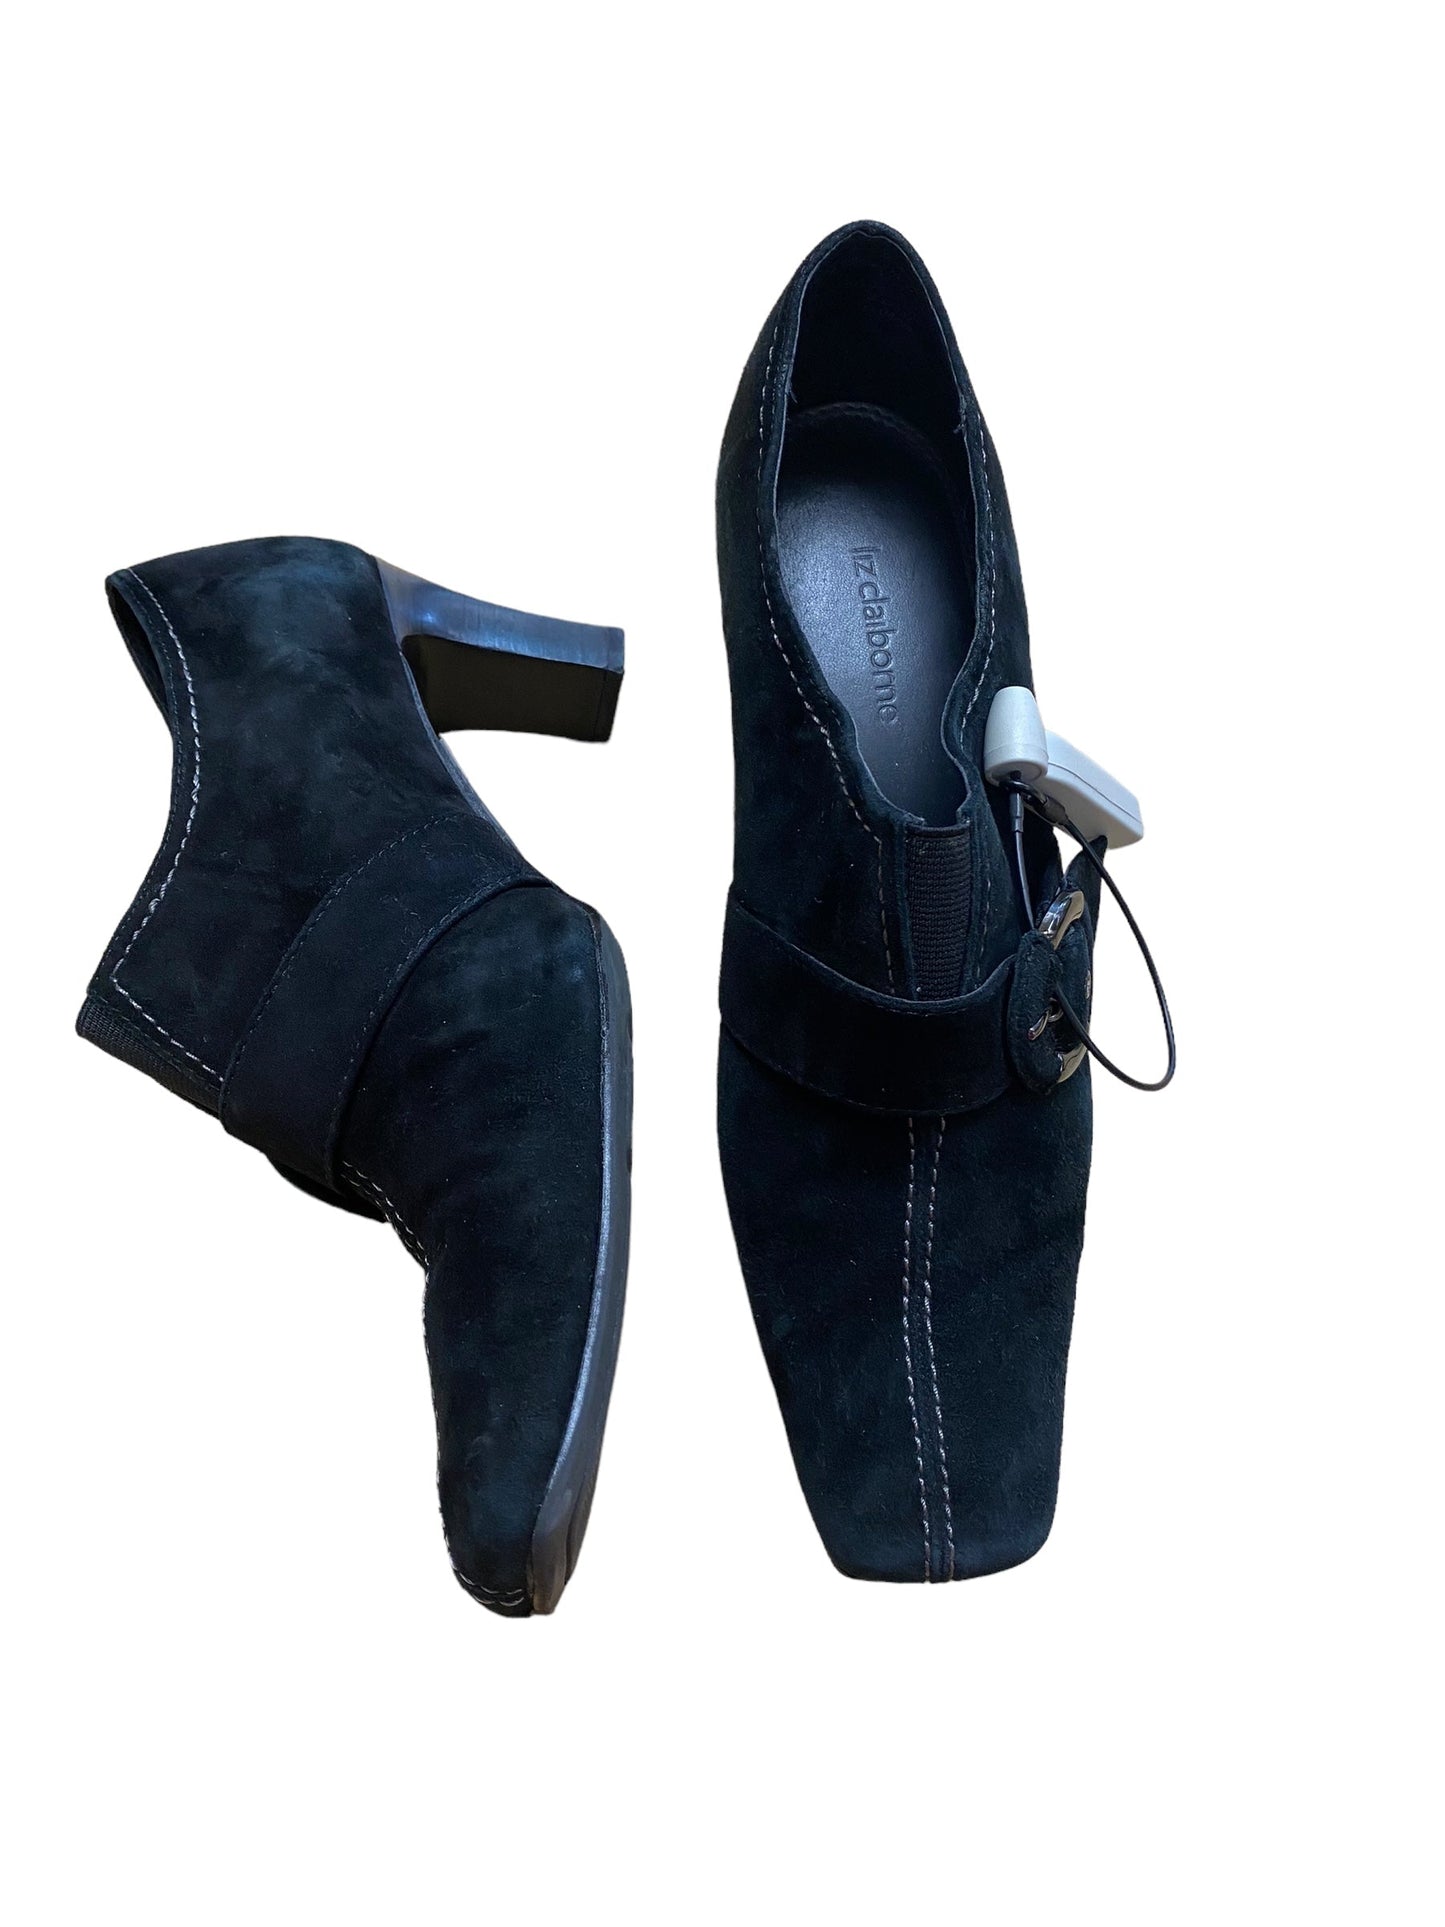 Black Shoes Heels Block Liz Claiborne, Size 8.5